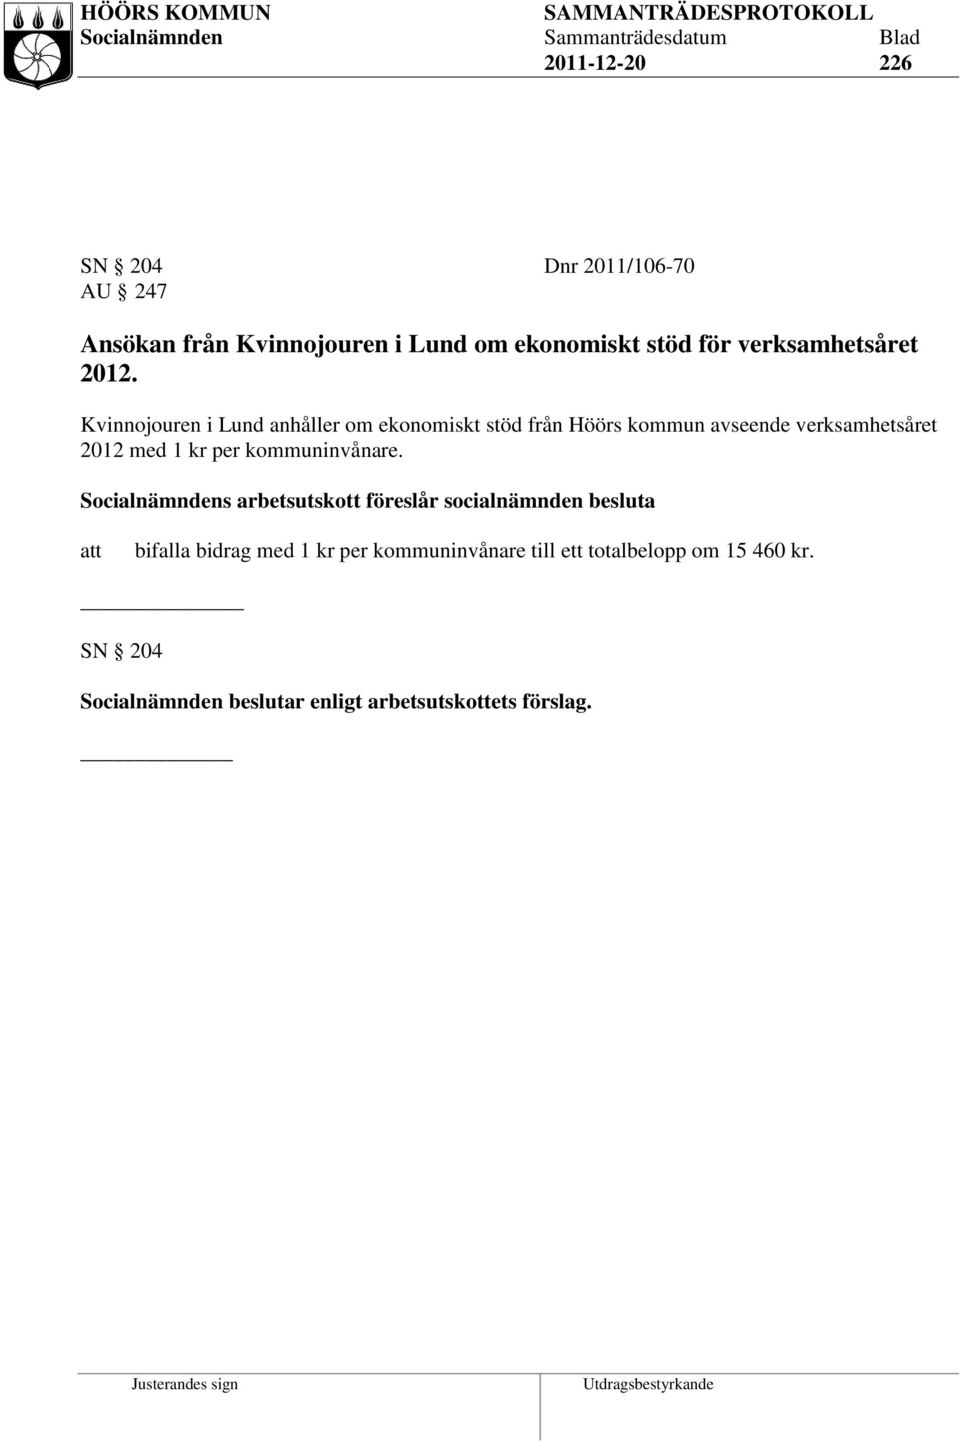 Kvinnojouren i Lund anhåller om ekonomiskt stöd från Höörs kommun avseende verksamhetsåret 2012 med 1 kr per